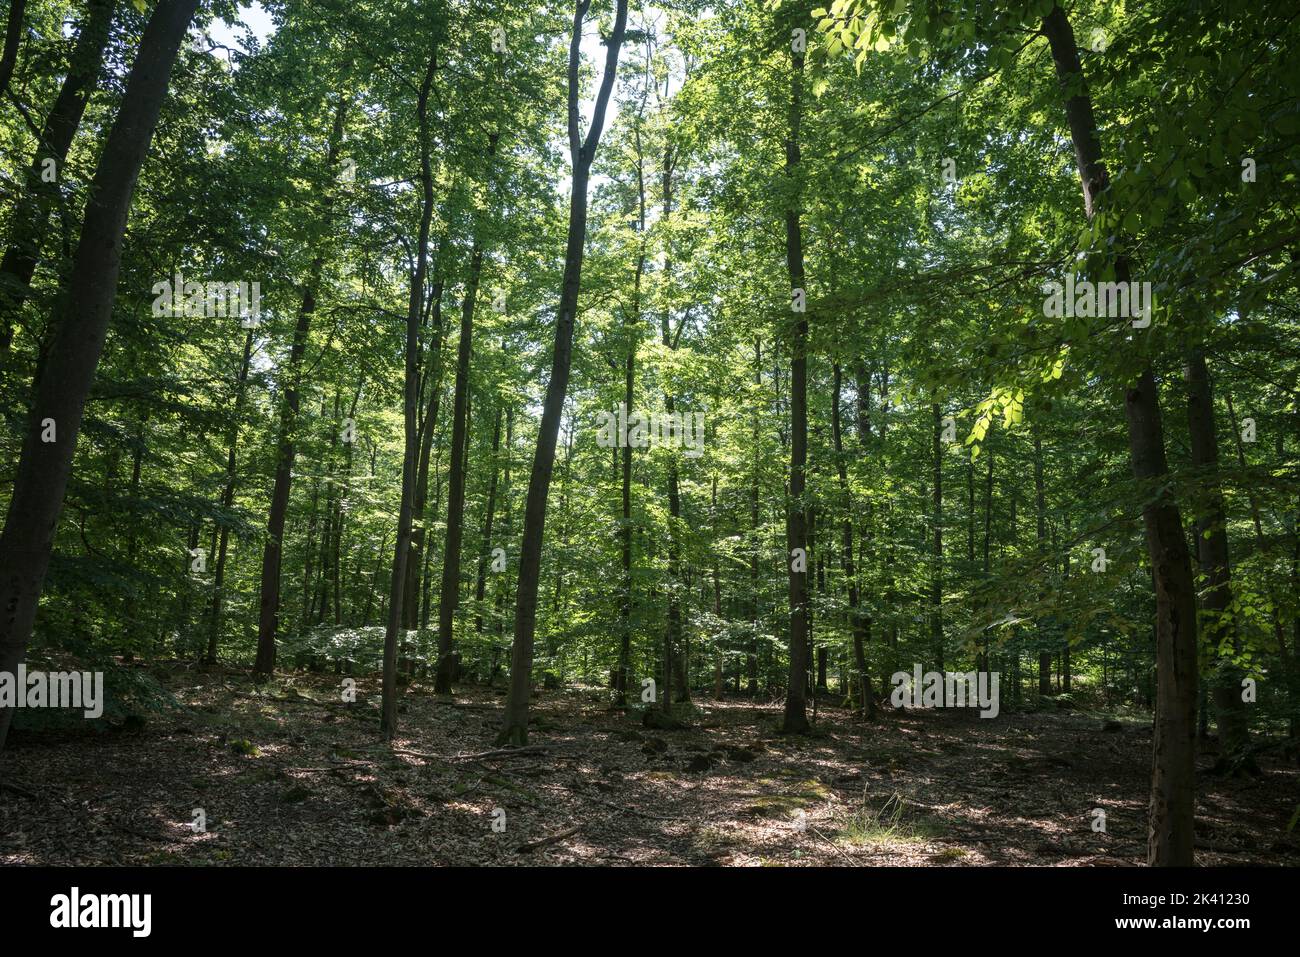 Vue dans une forêt dense à feuilles caduques dans une zone boisée de la forêt du Palatinat dans le sud de l'Allemagne Banque D'Images